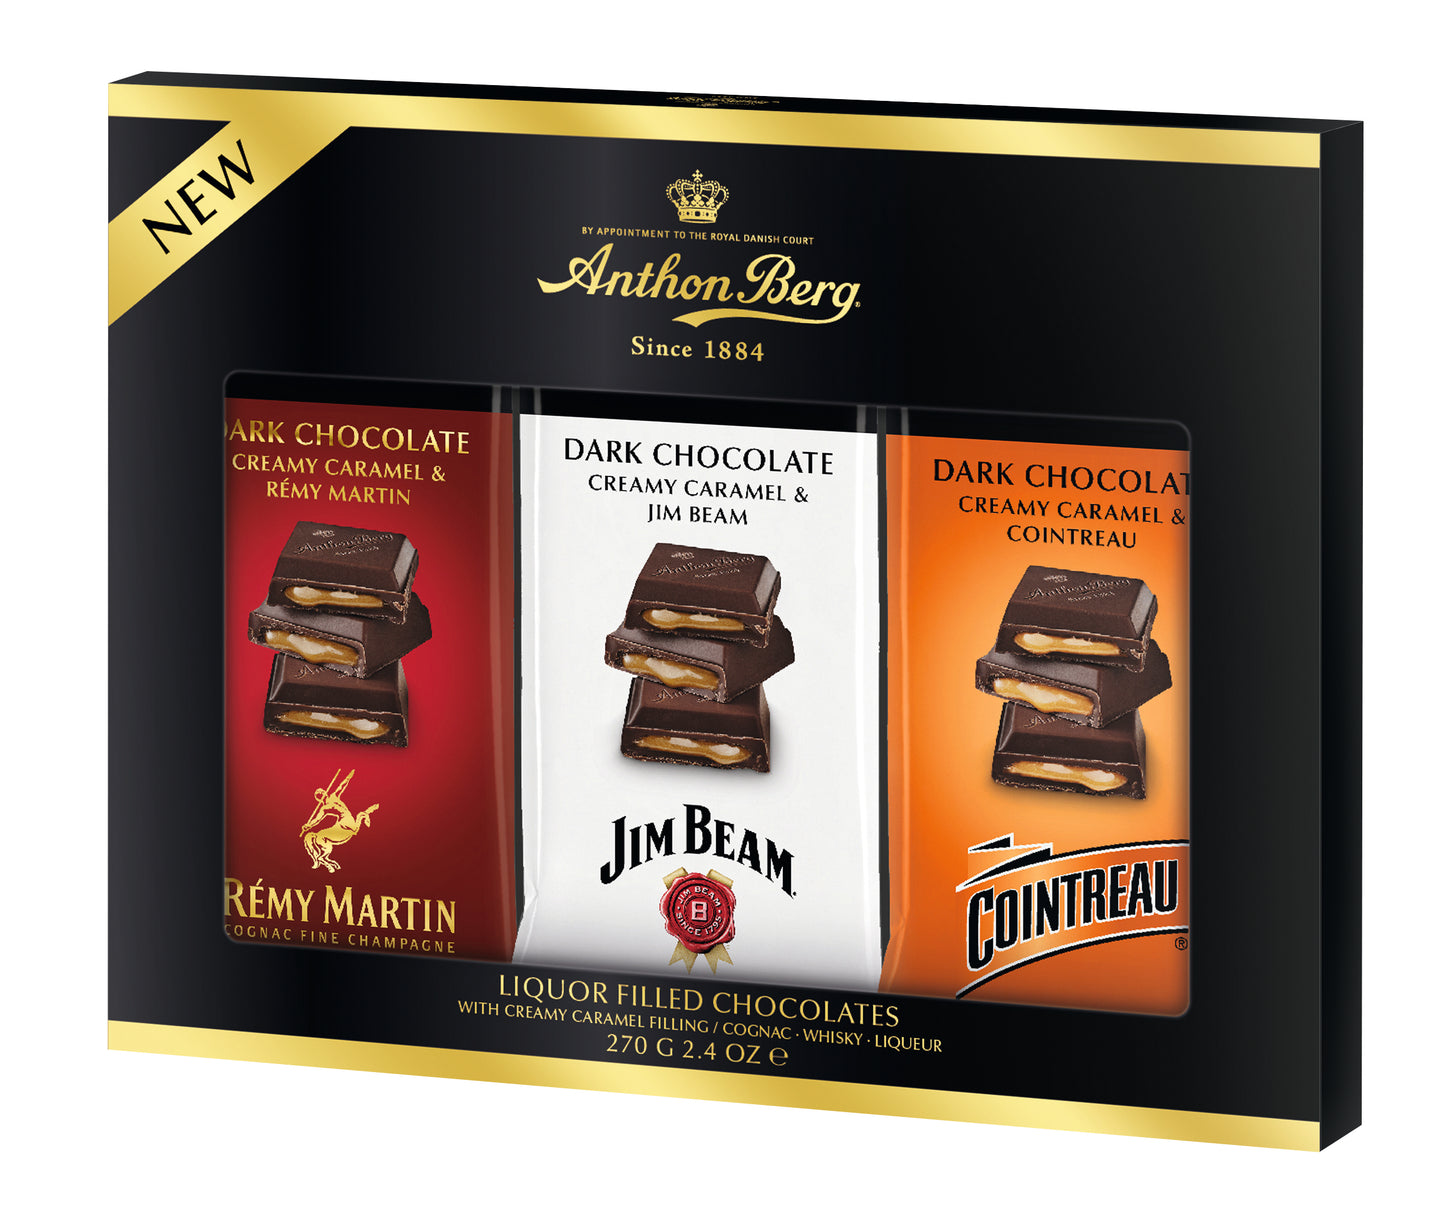 Anthon Berg Dark Chocolate & Caramel Liqueur Trio Pack